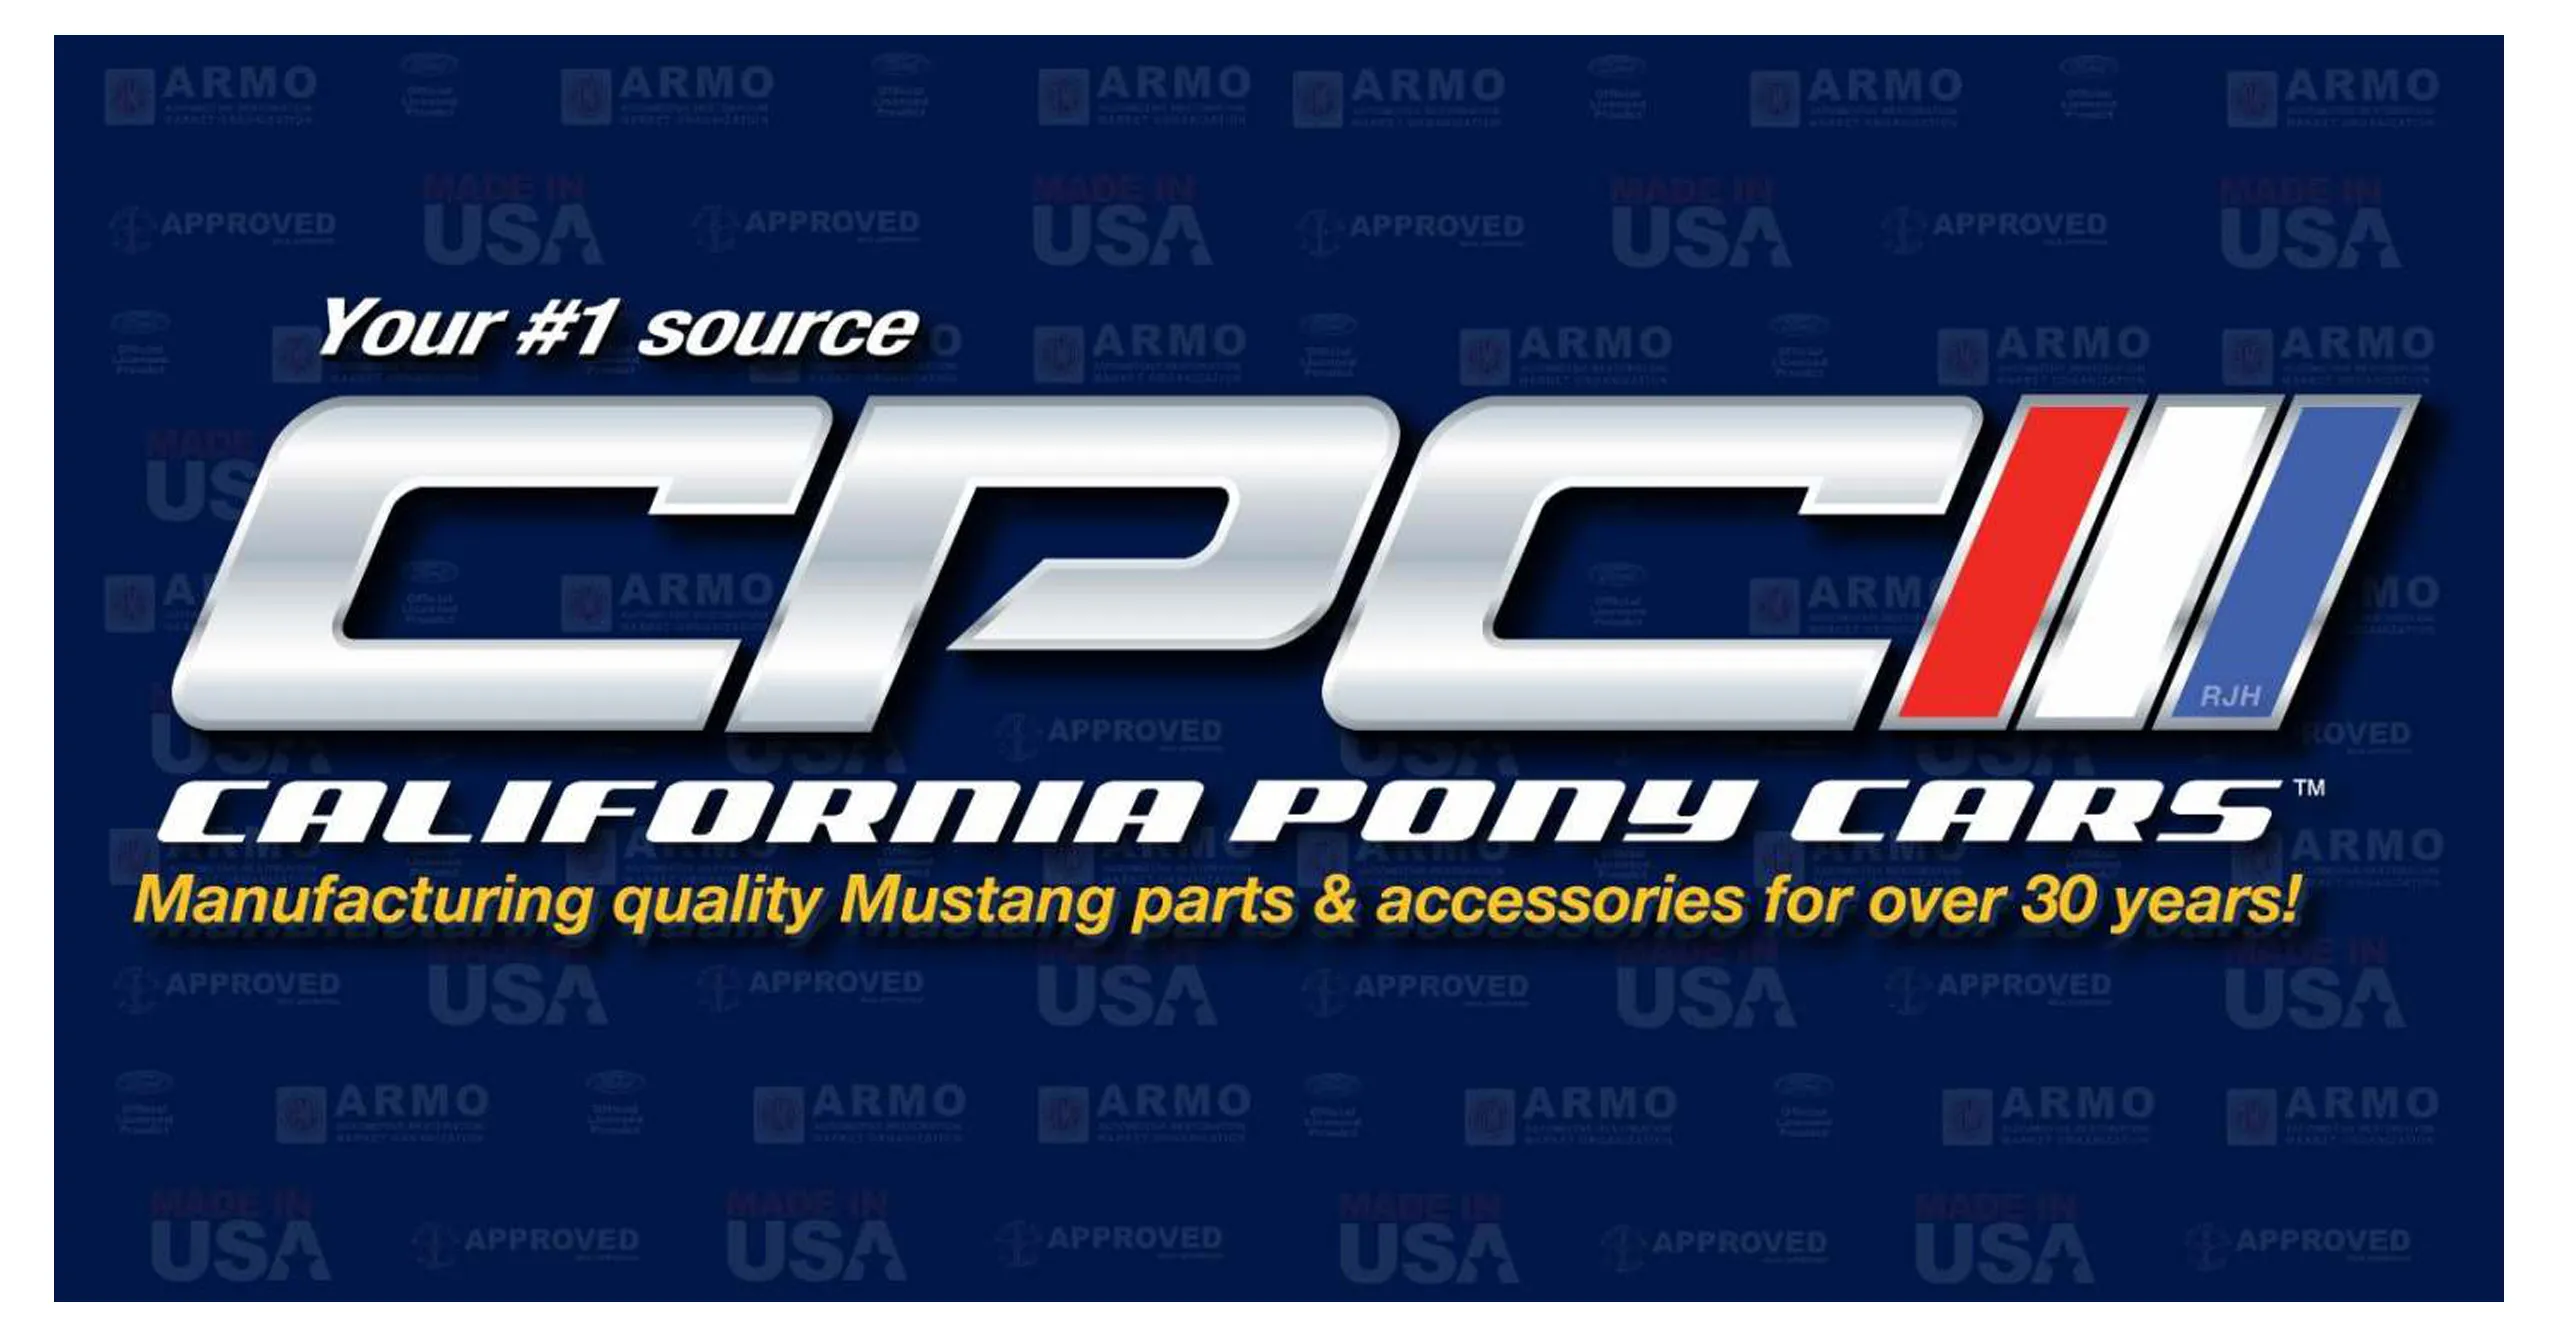 California Pony Cars logo